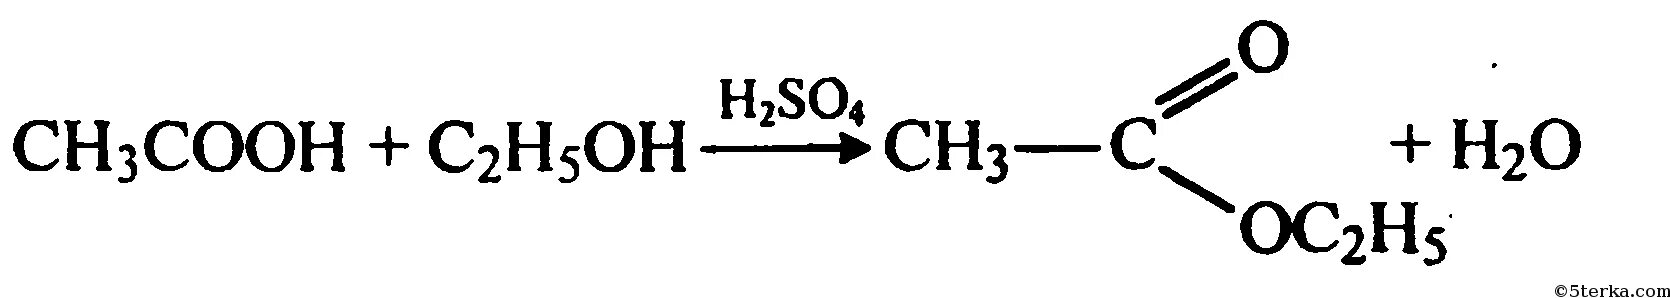 Окисление метанола на Медном катализаторе. Уксусный альдегид и гидроксид меди 2. Уксусный альдегид плюс гидроксид меди 2. Этаналь и гидроксид меди 2